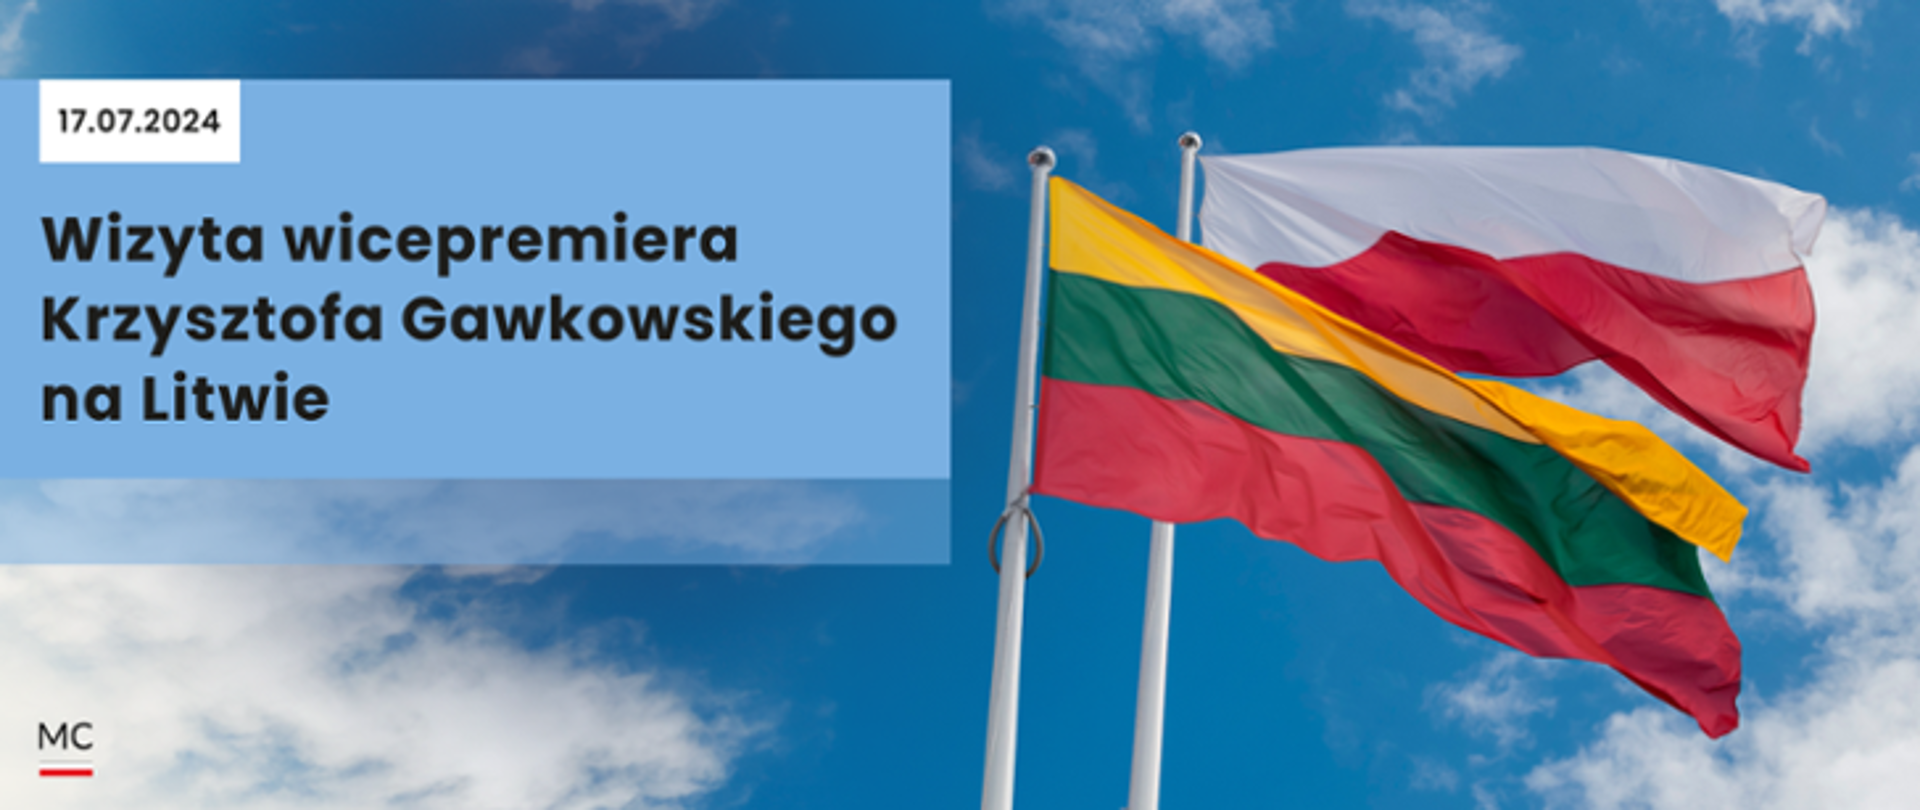 Po lewej stronie napis Wizyta wicepremiera Krzysztofa Gawkowskiego na Litwie, po lewej flaga Polski i Litwy